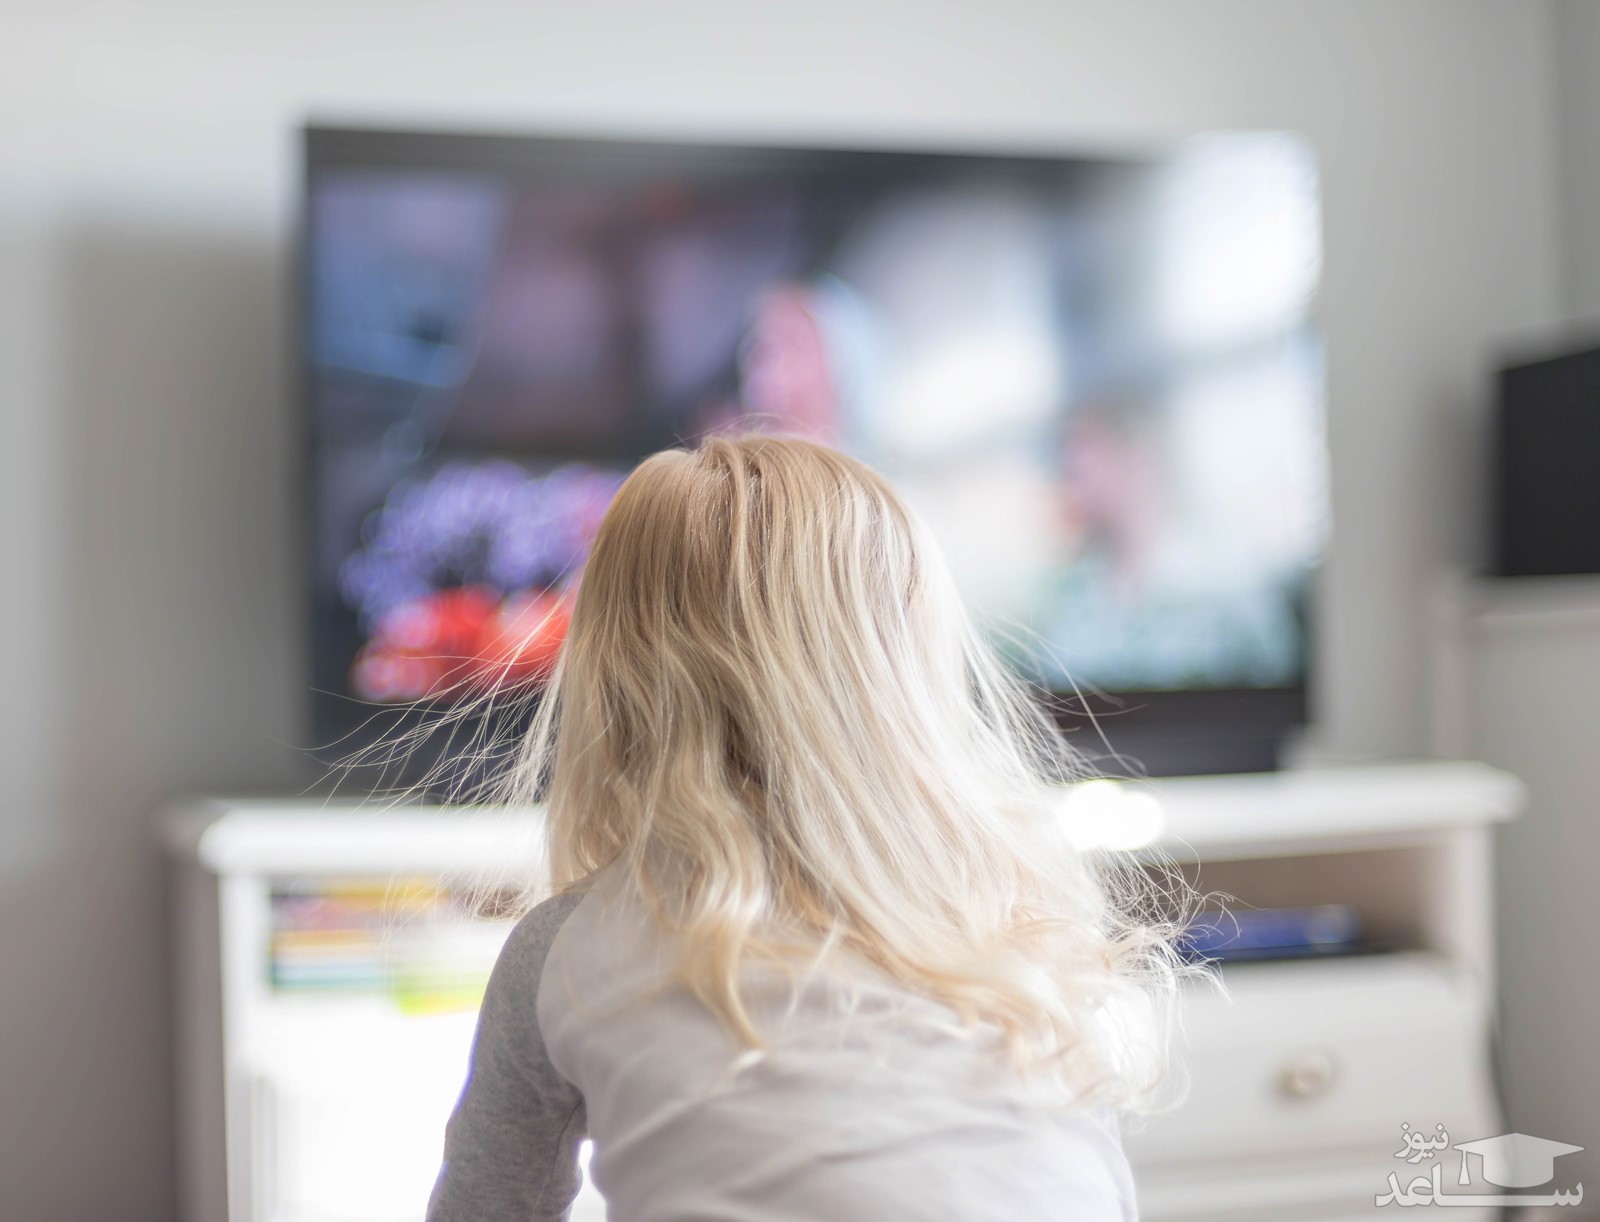 مهم ترین مزایا و معایب تماشای تلویزیون برای کودکان